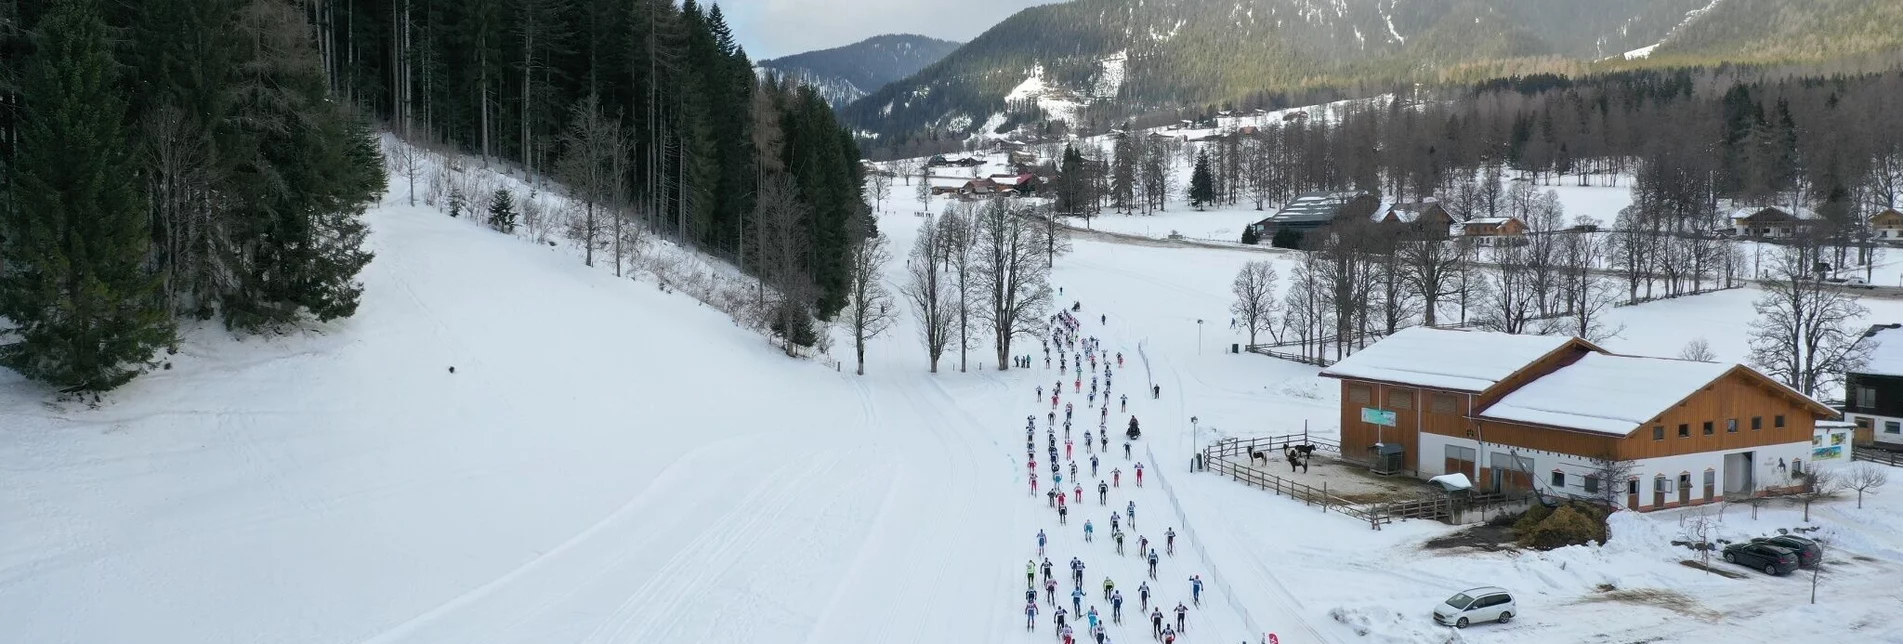 Langlauf Dachsteinlauf 10 km Classic & Skating - Touren-Impression #1 | © Erlebnisregion Schladming-Dachstein